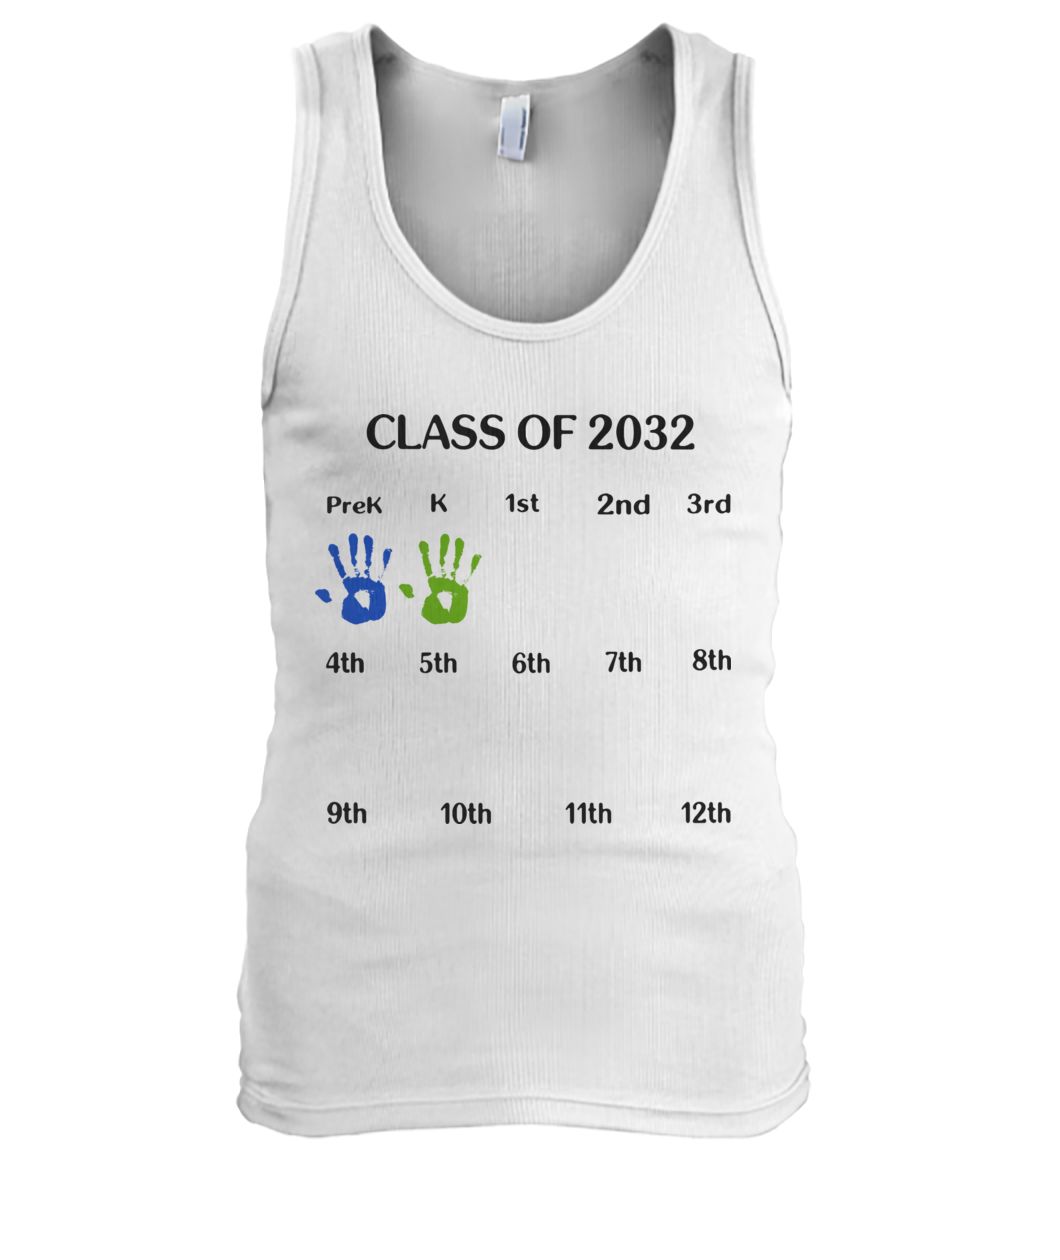 Class of 2032 grow with me men's tank top